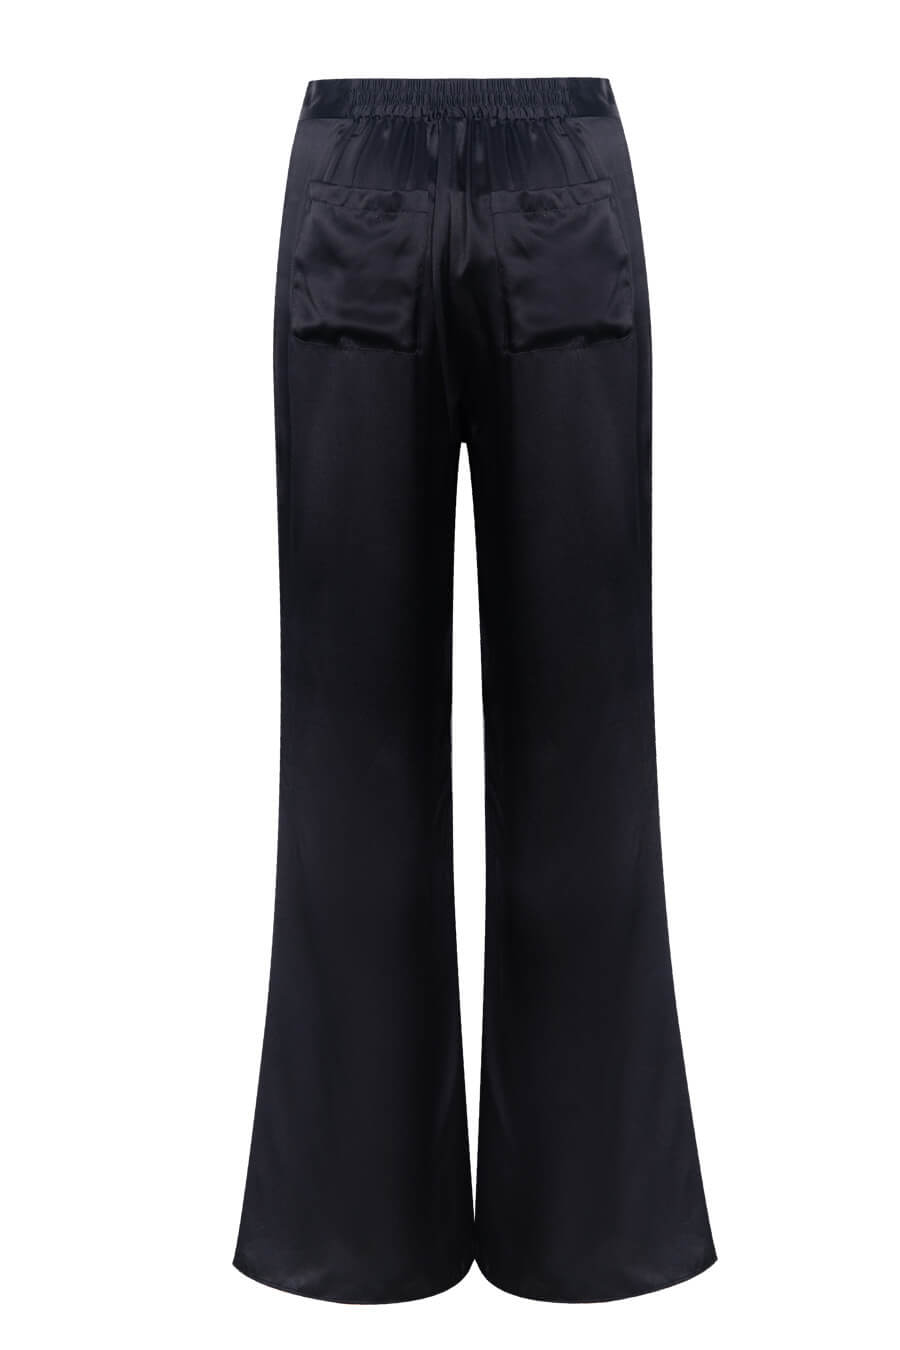 Silk pants in black